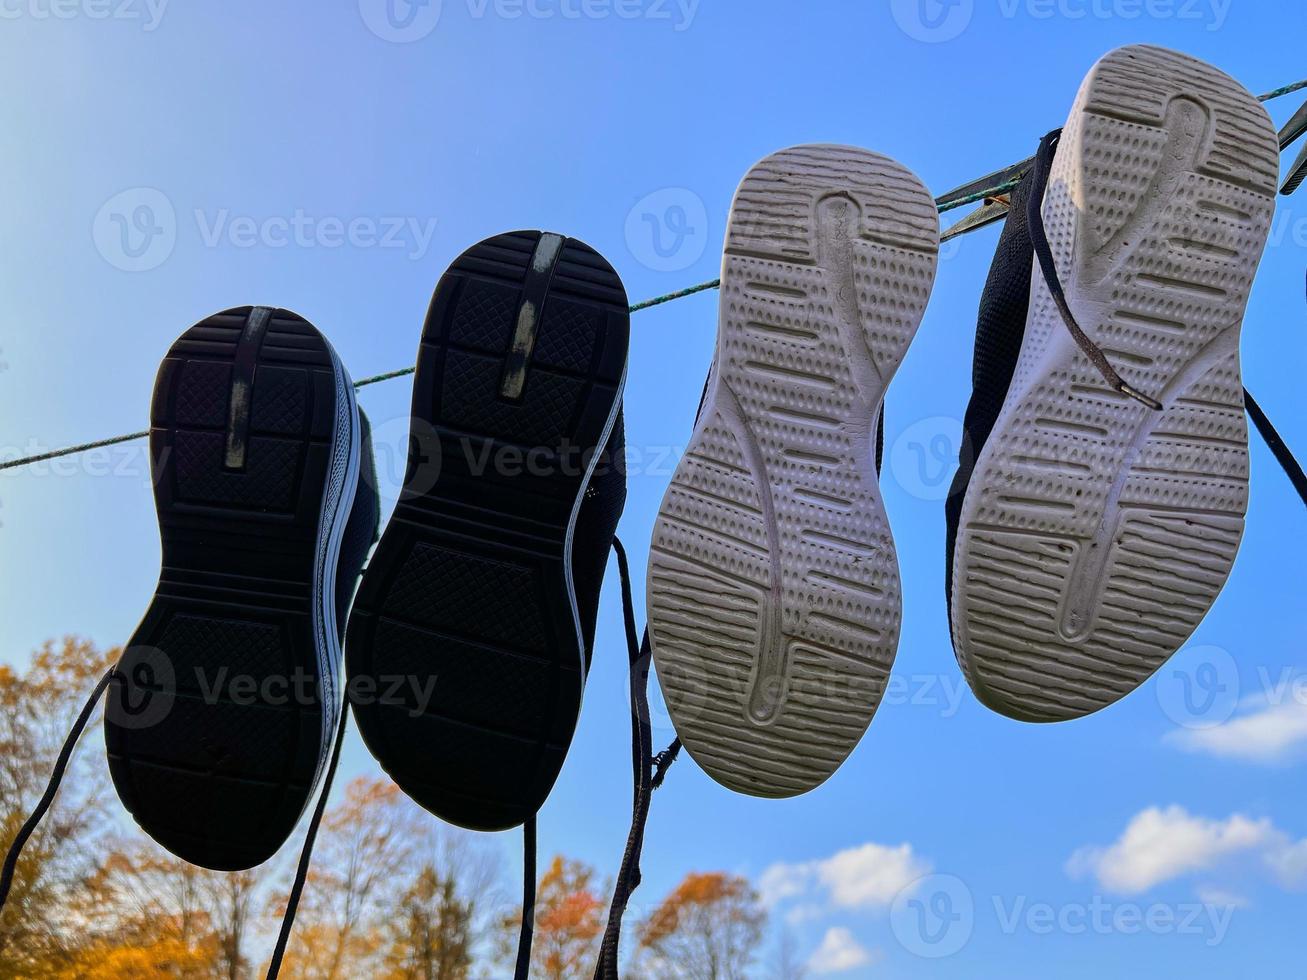 dos pares de zapatillas se están secando en un tendedero contra un cielo azul. foto